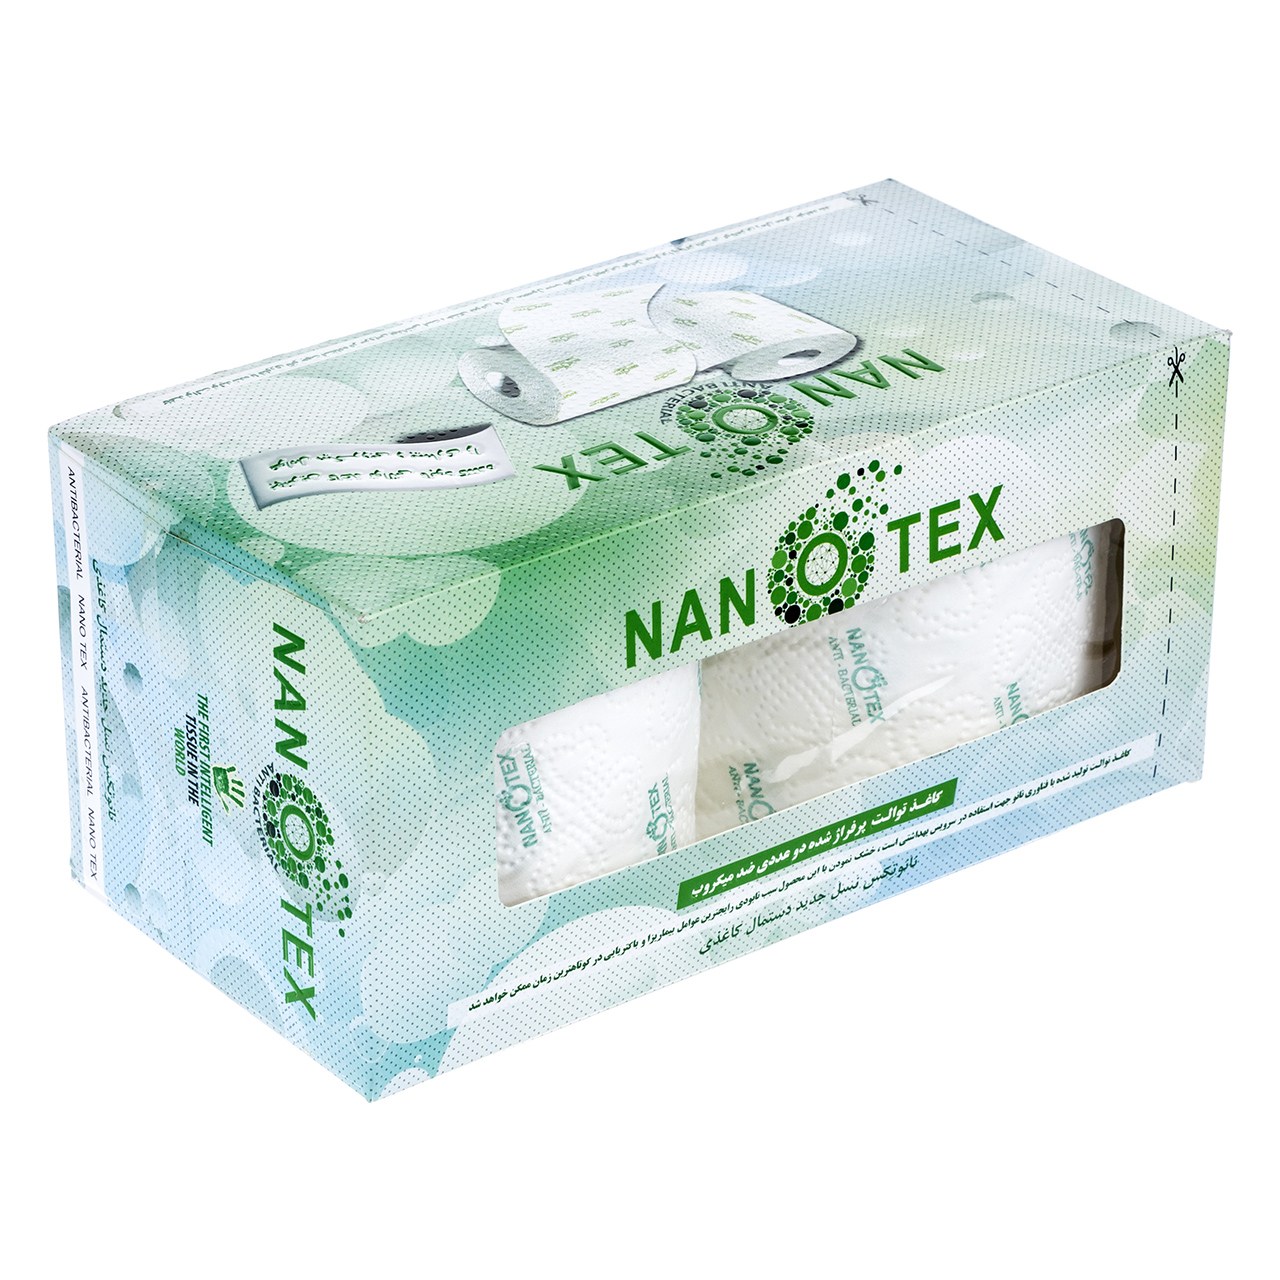 دستمال توالت گلریز مدل Nanotex - بسته 2 عددی